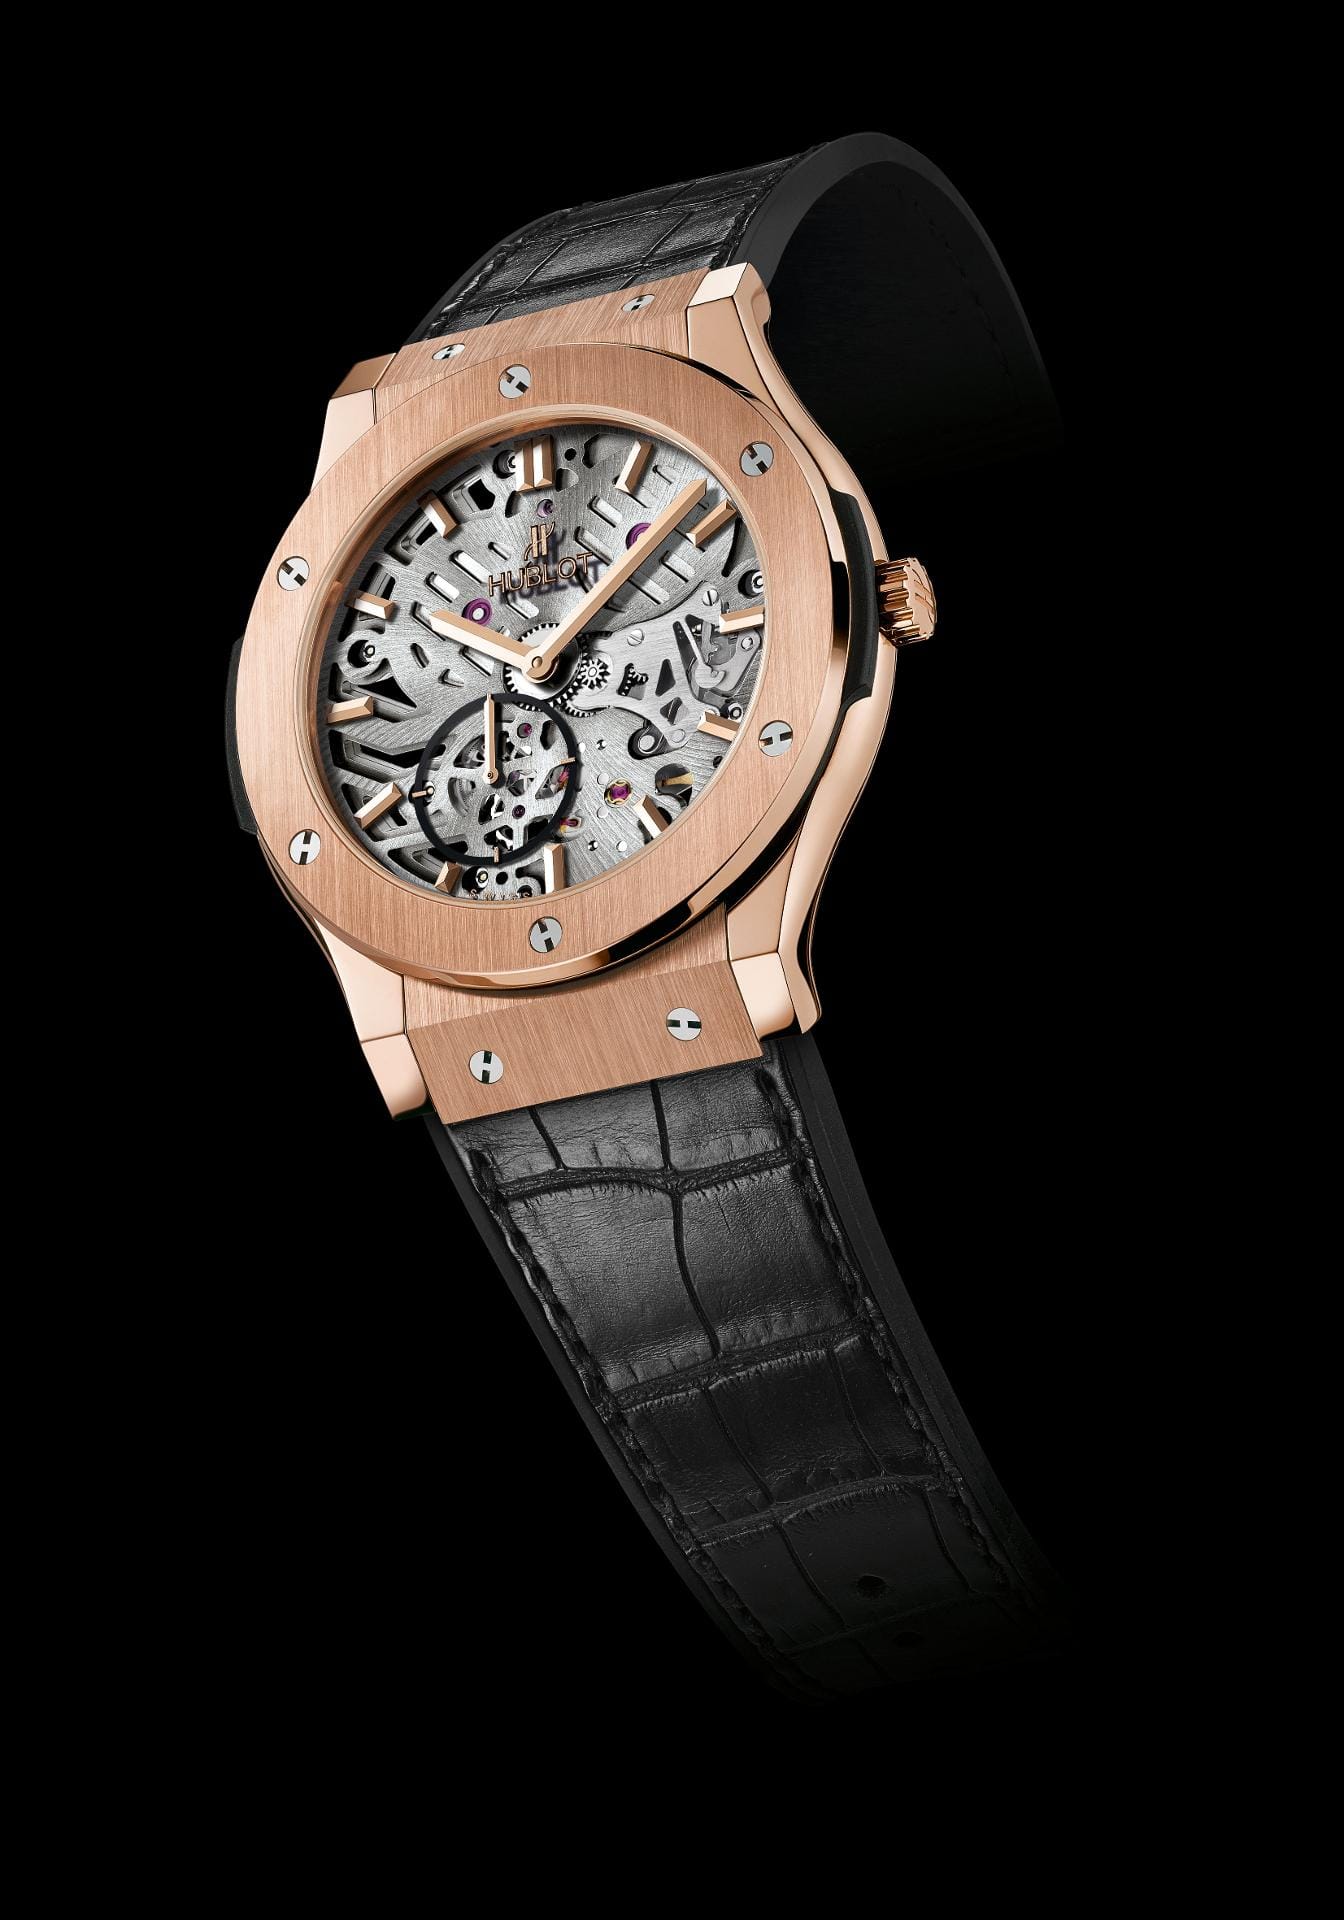 Ein Hingucker ist auch die Hublot Classic Fusion Ultra-Thin Skeleleton King Gold. Für knapp unter 30.000 Euro ist die Uhr zu haben.